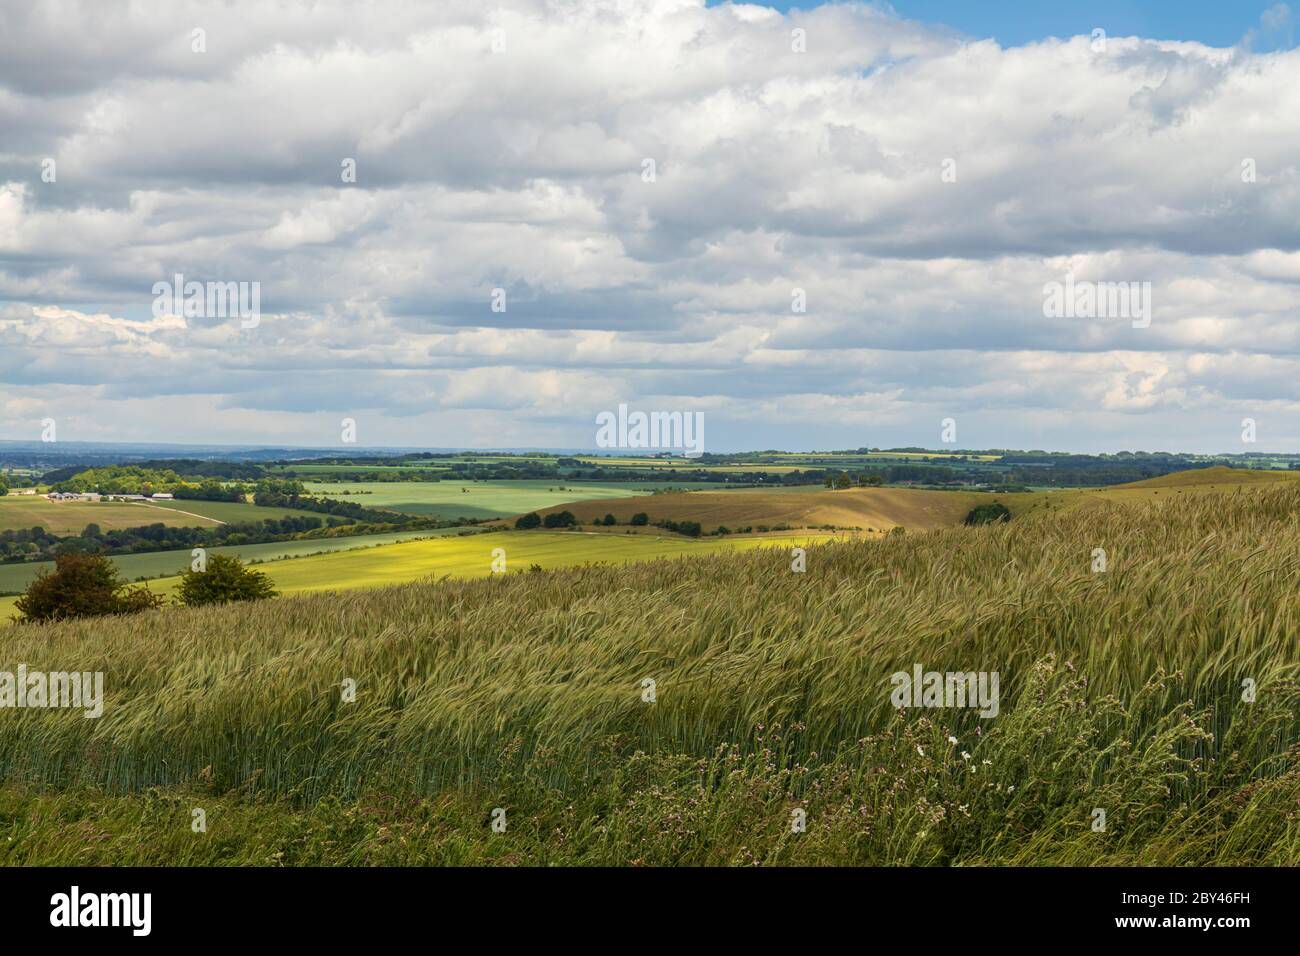 Blick von der Spitze des Morgans Hill of Wiltshire Landschaft. Ein windiger Tag mit langen Gräsern, die im Wind wehen. Ein Ort von besonderem wissenschaftlichem Interesse. Stockfoto